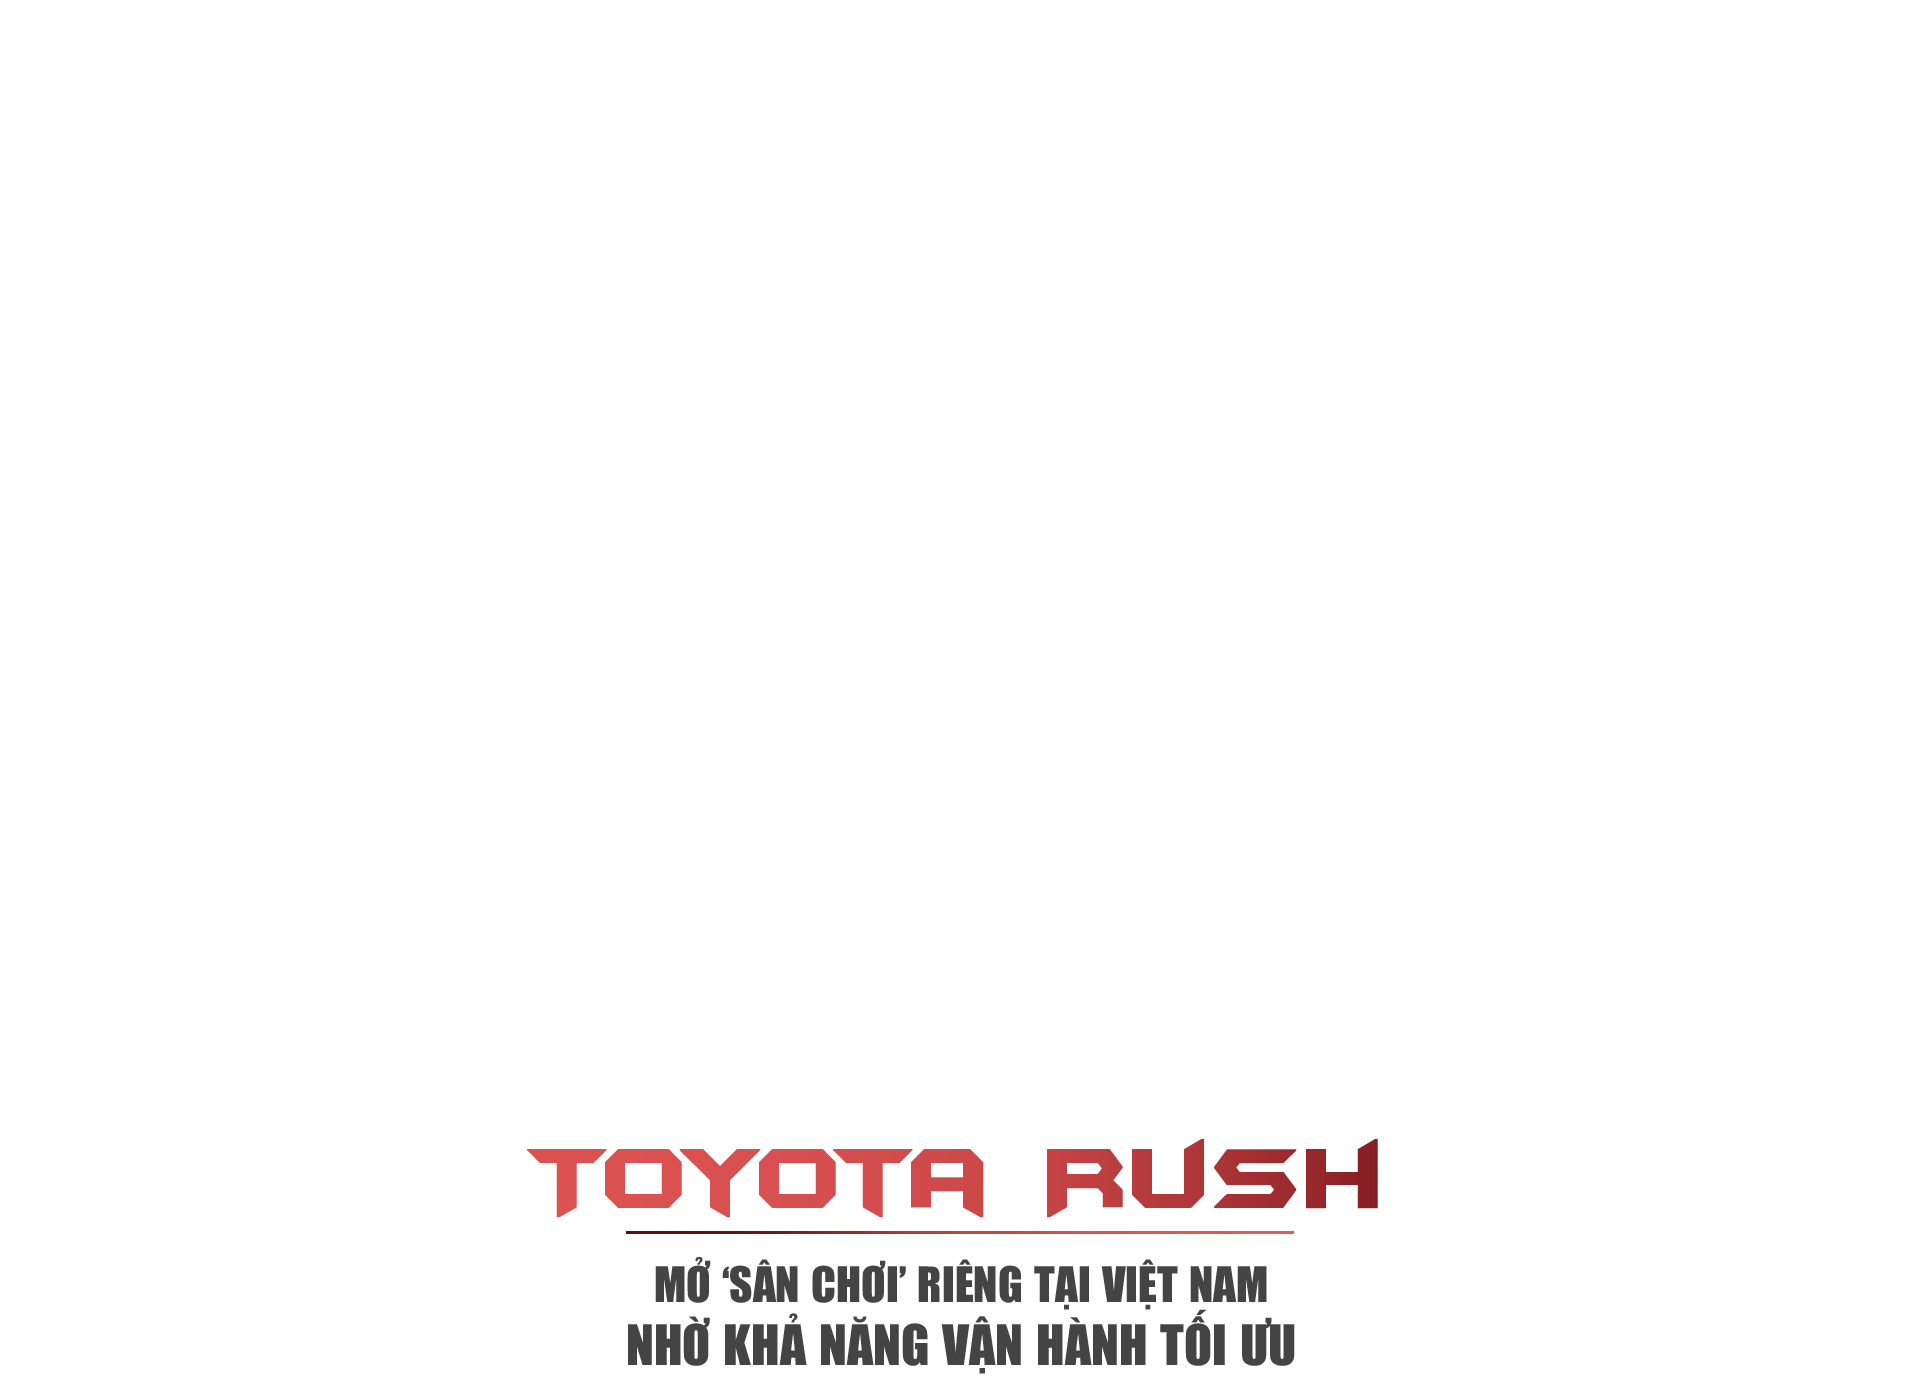 Toyota Rush mở ‘sân chơi’ riêng tại Việt Nam nhờ khả năng vận hành tối ưu - 1